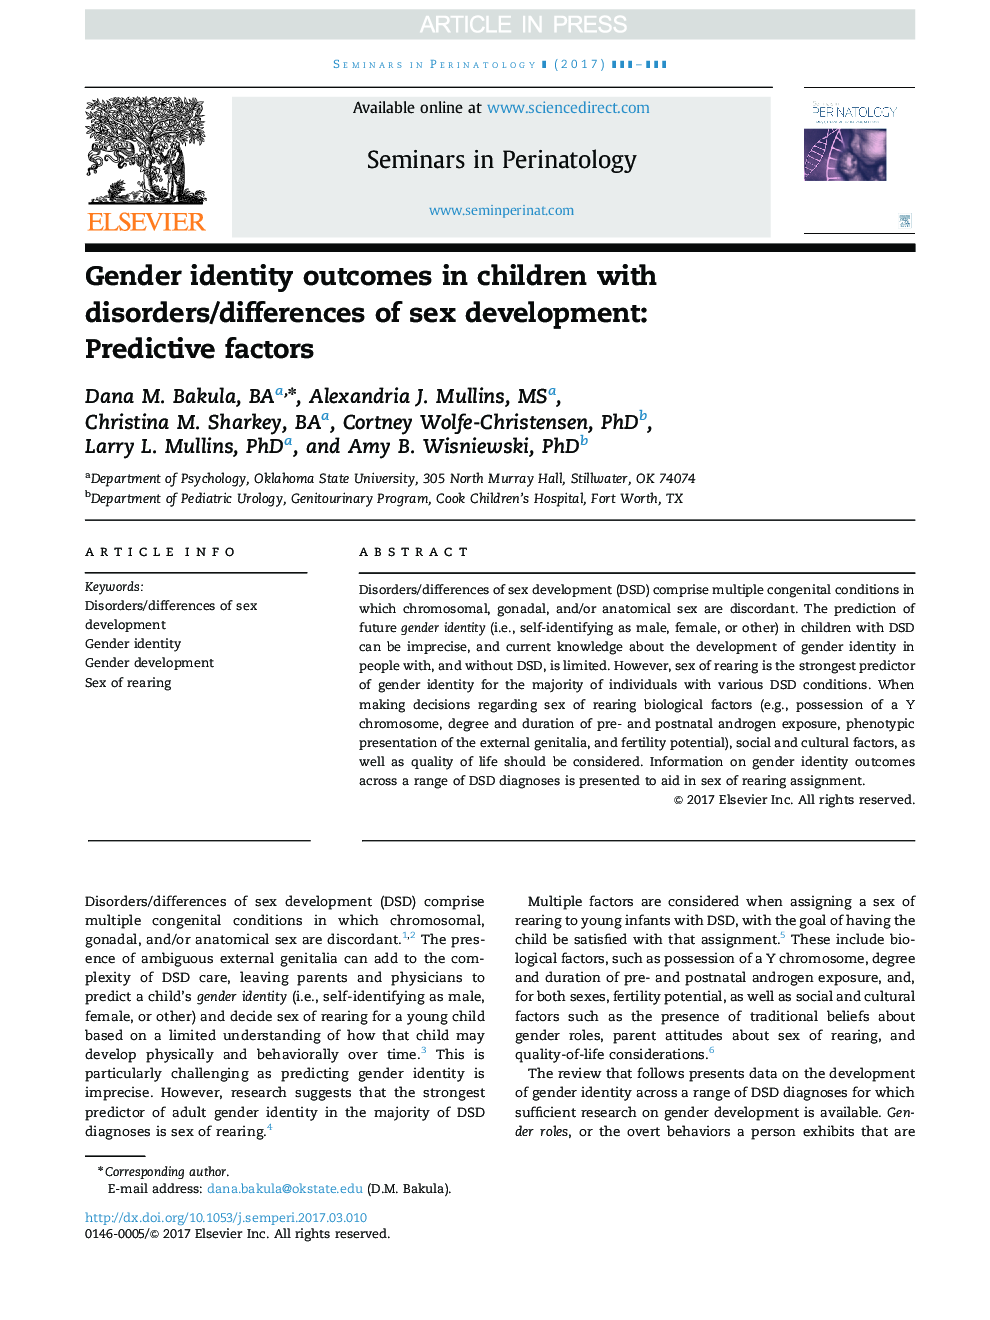 نتایج هویت جنسی در کودکان مبتلا به اختلالات / اختلالات رشد جنسی: عوامل پیش بینی کننده 